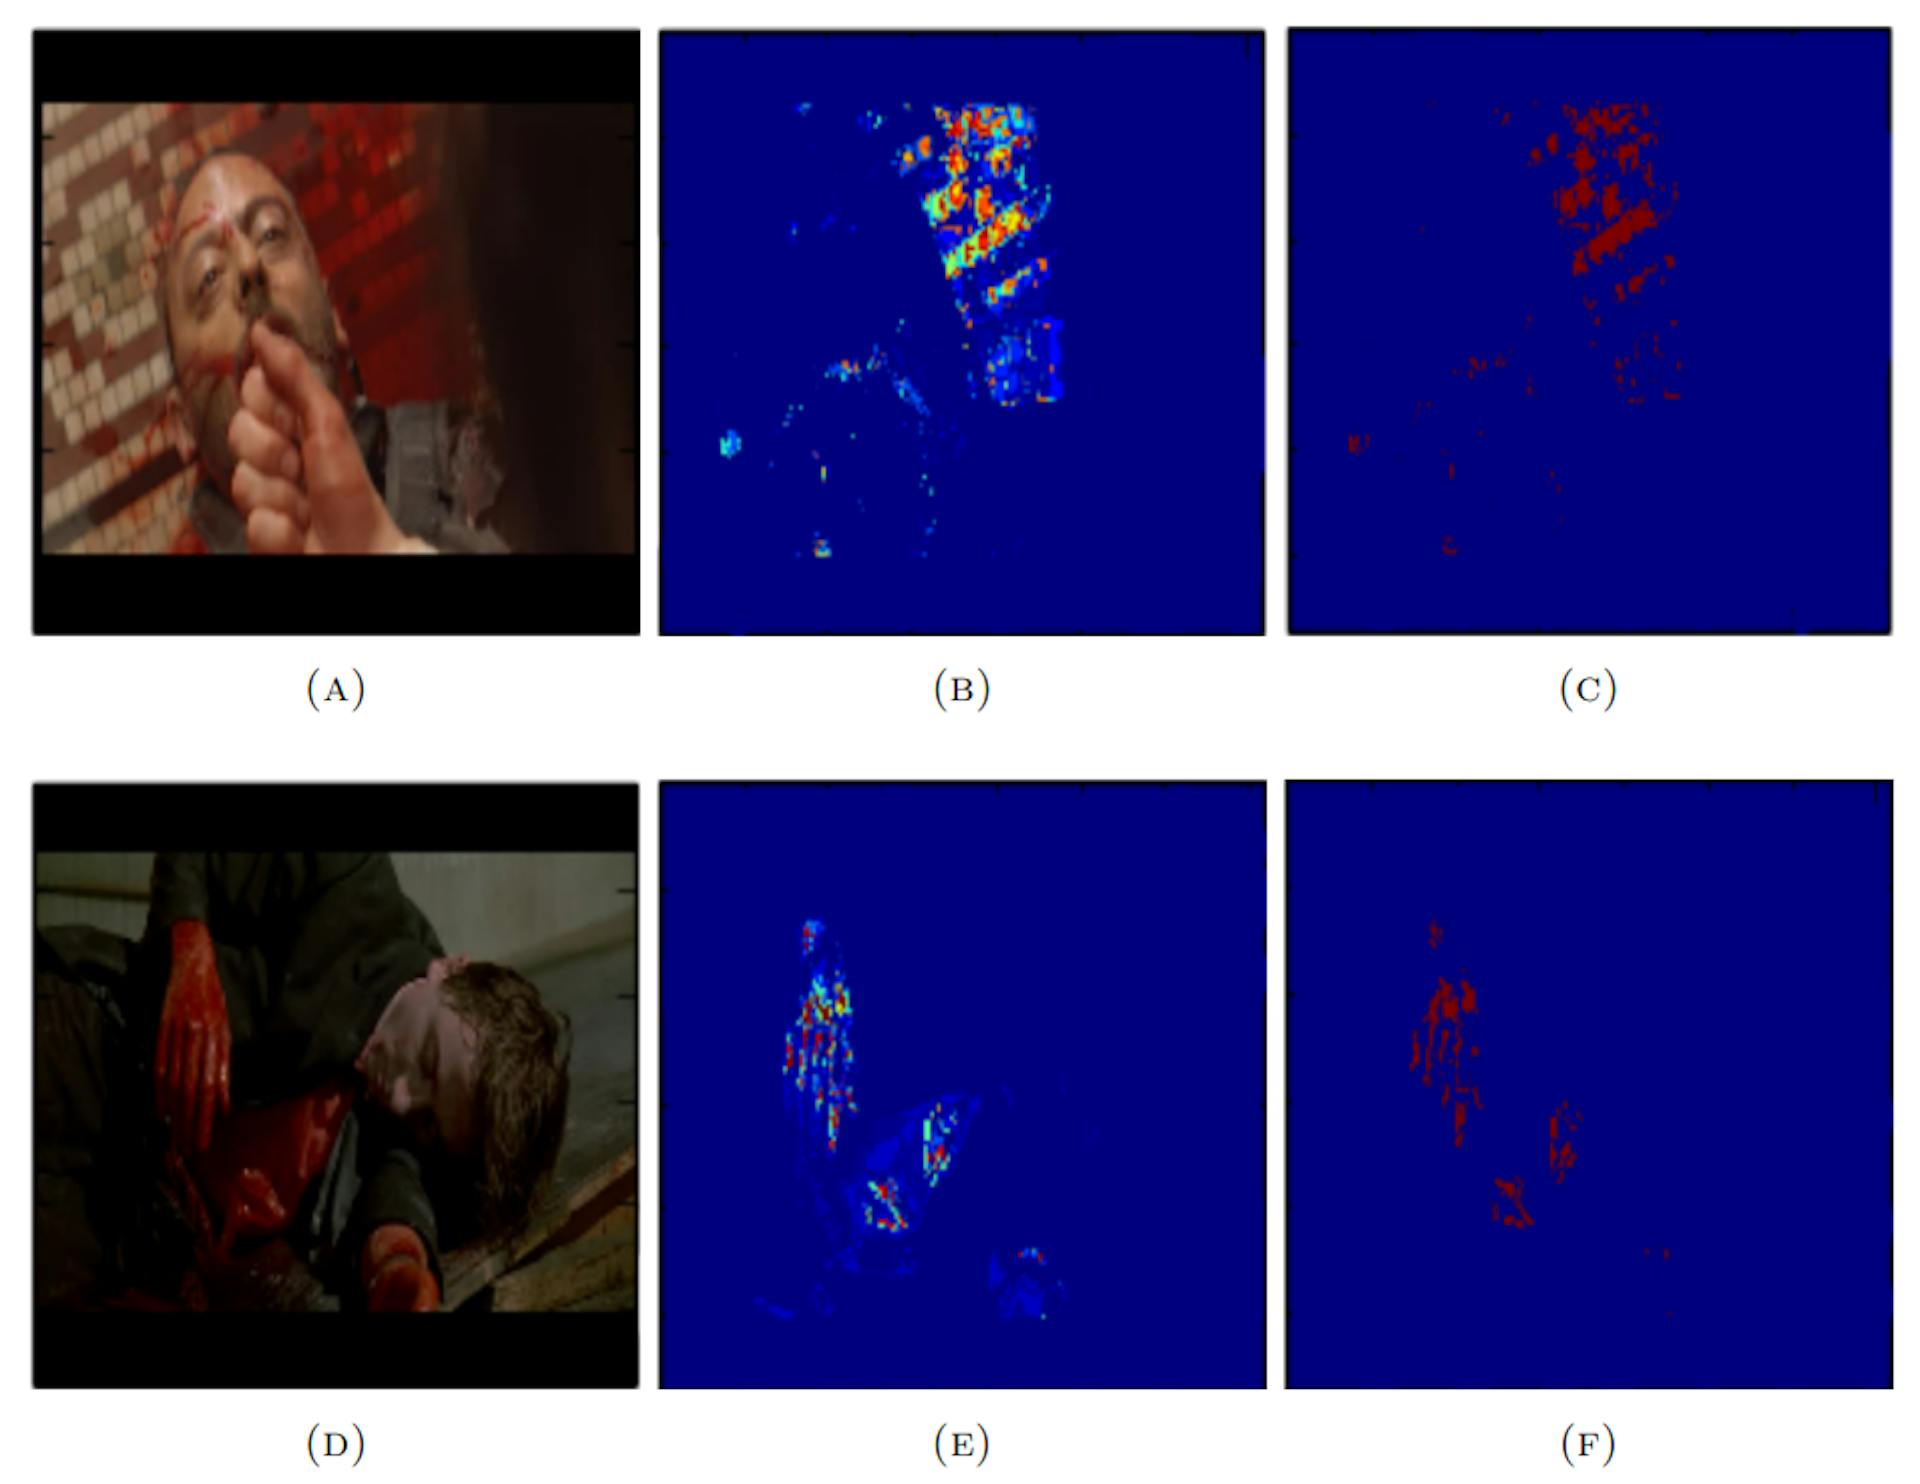 Abbildung 4.6: Abbildung, die die Leistung des Blutdetektors anhand von Beispielbildern aus dem Hollywood-Datensatz zeigt. Die Bilder in der ersten Spalte (A und D) sind die Eingabebilder, die Bilder in der zweiten Spalte (B und E) sind die Blutwahrscheinlichkeitskarten und die Bilder in der letzten Spalte (C und F) sind die binärisierten Blutwahrscheinlichkeitskarten.